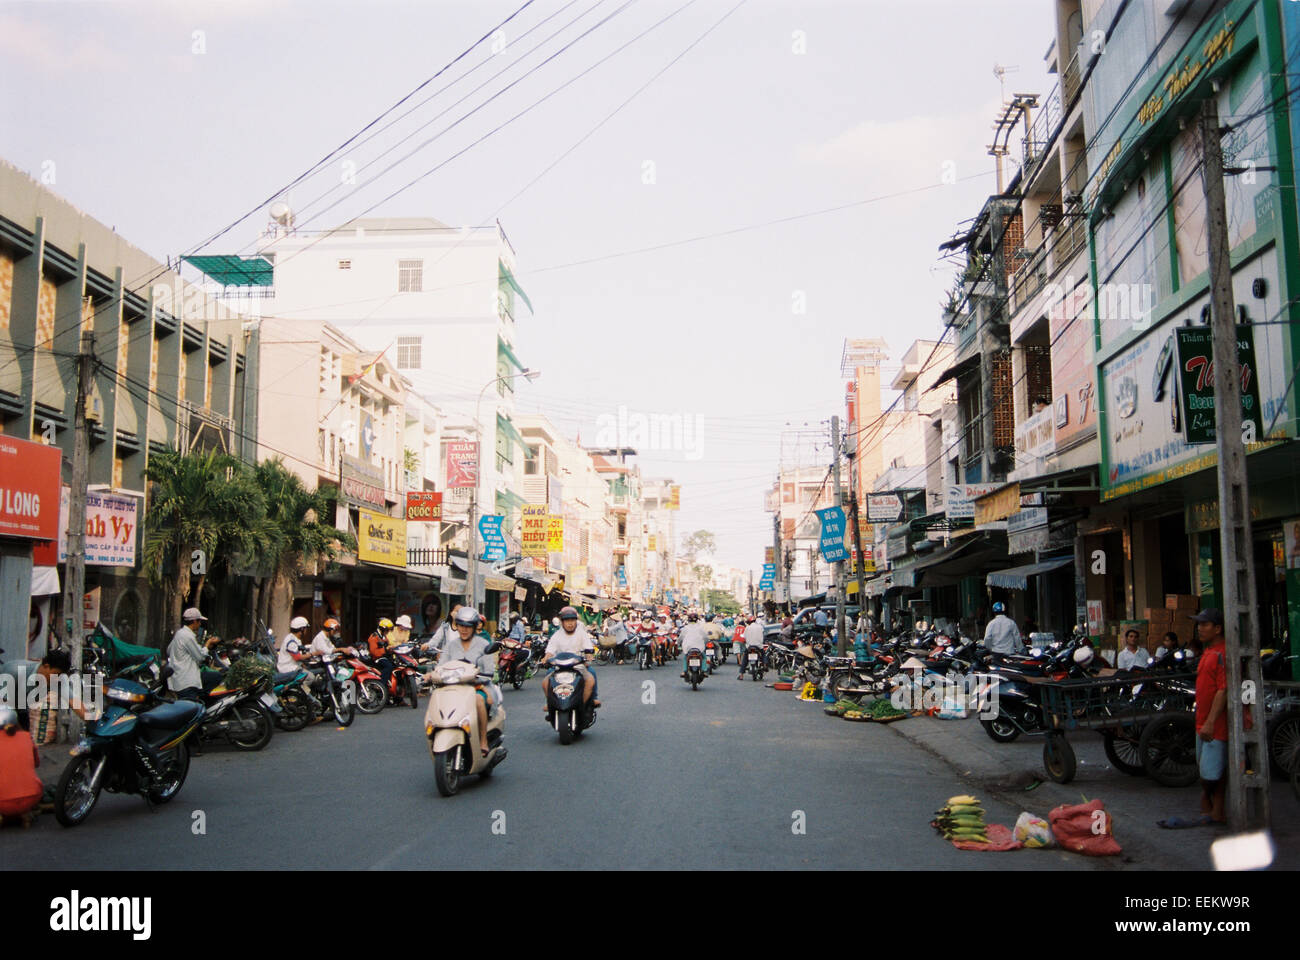 Street scene motorbikes in Vinh Long, Vietnam Stock Photo